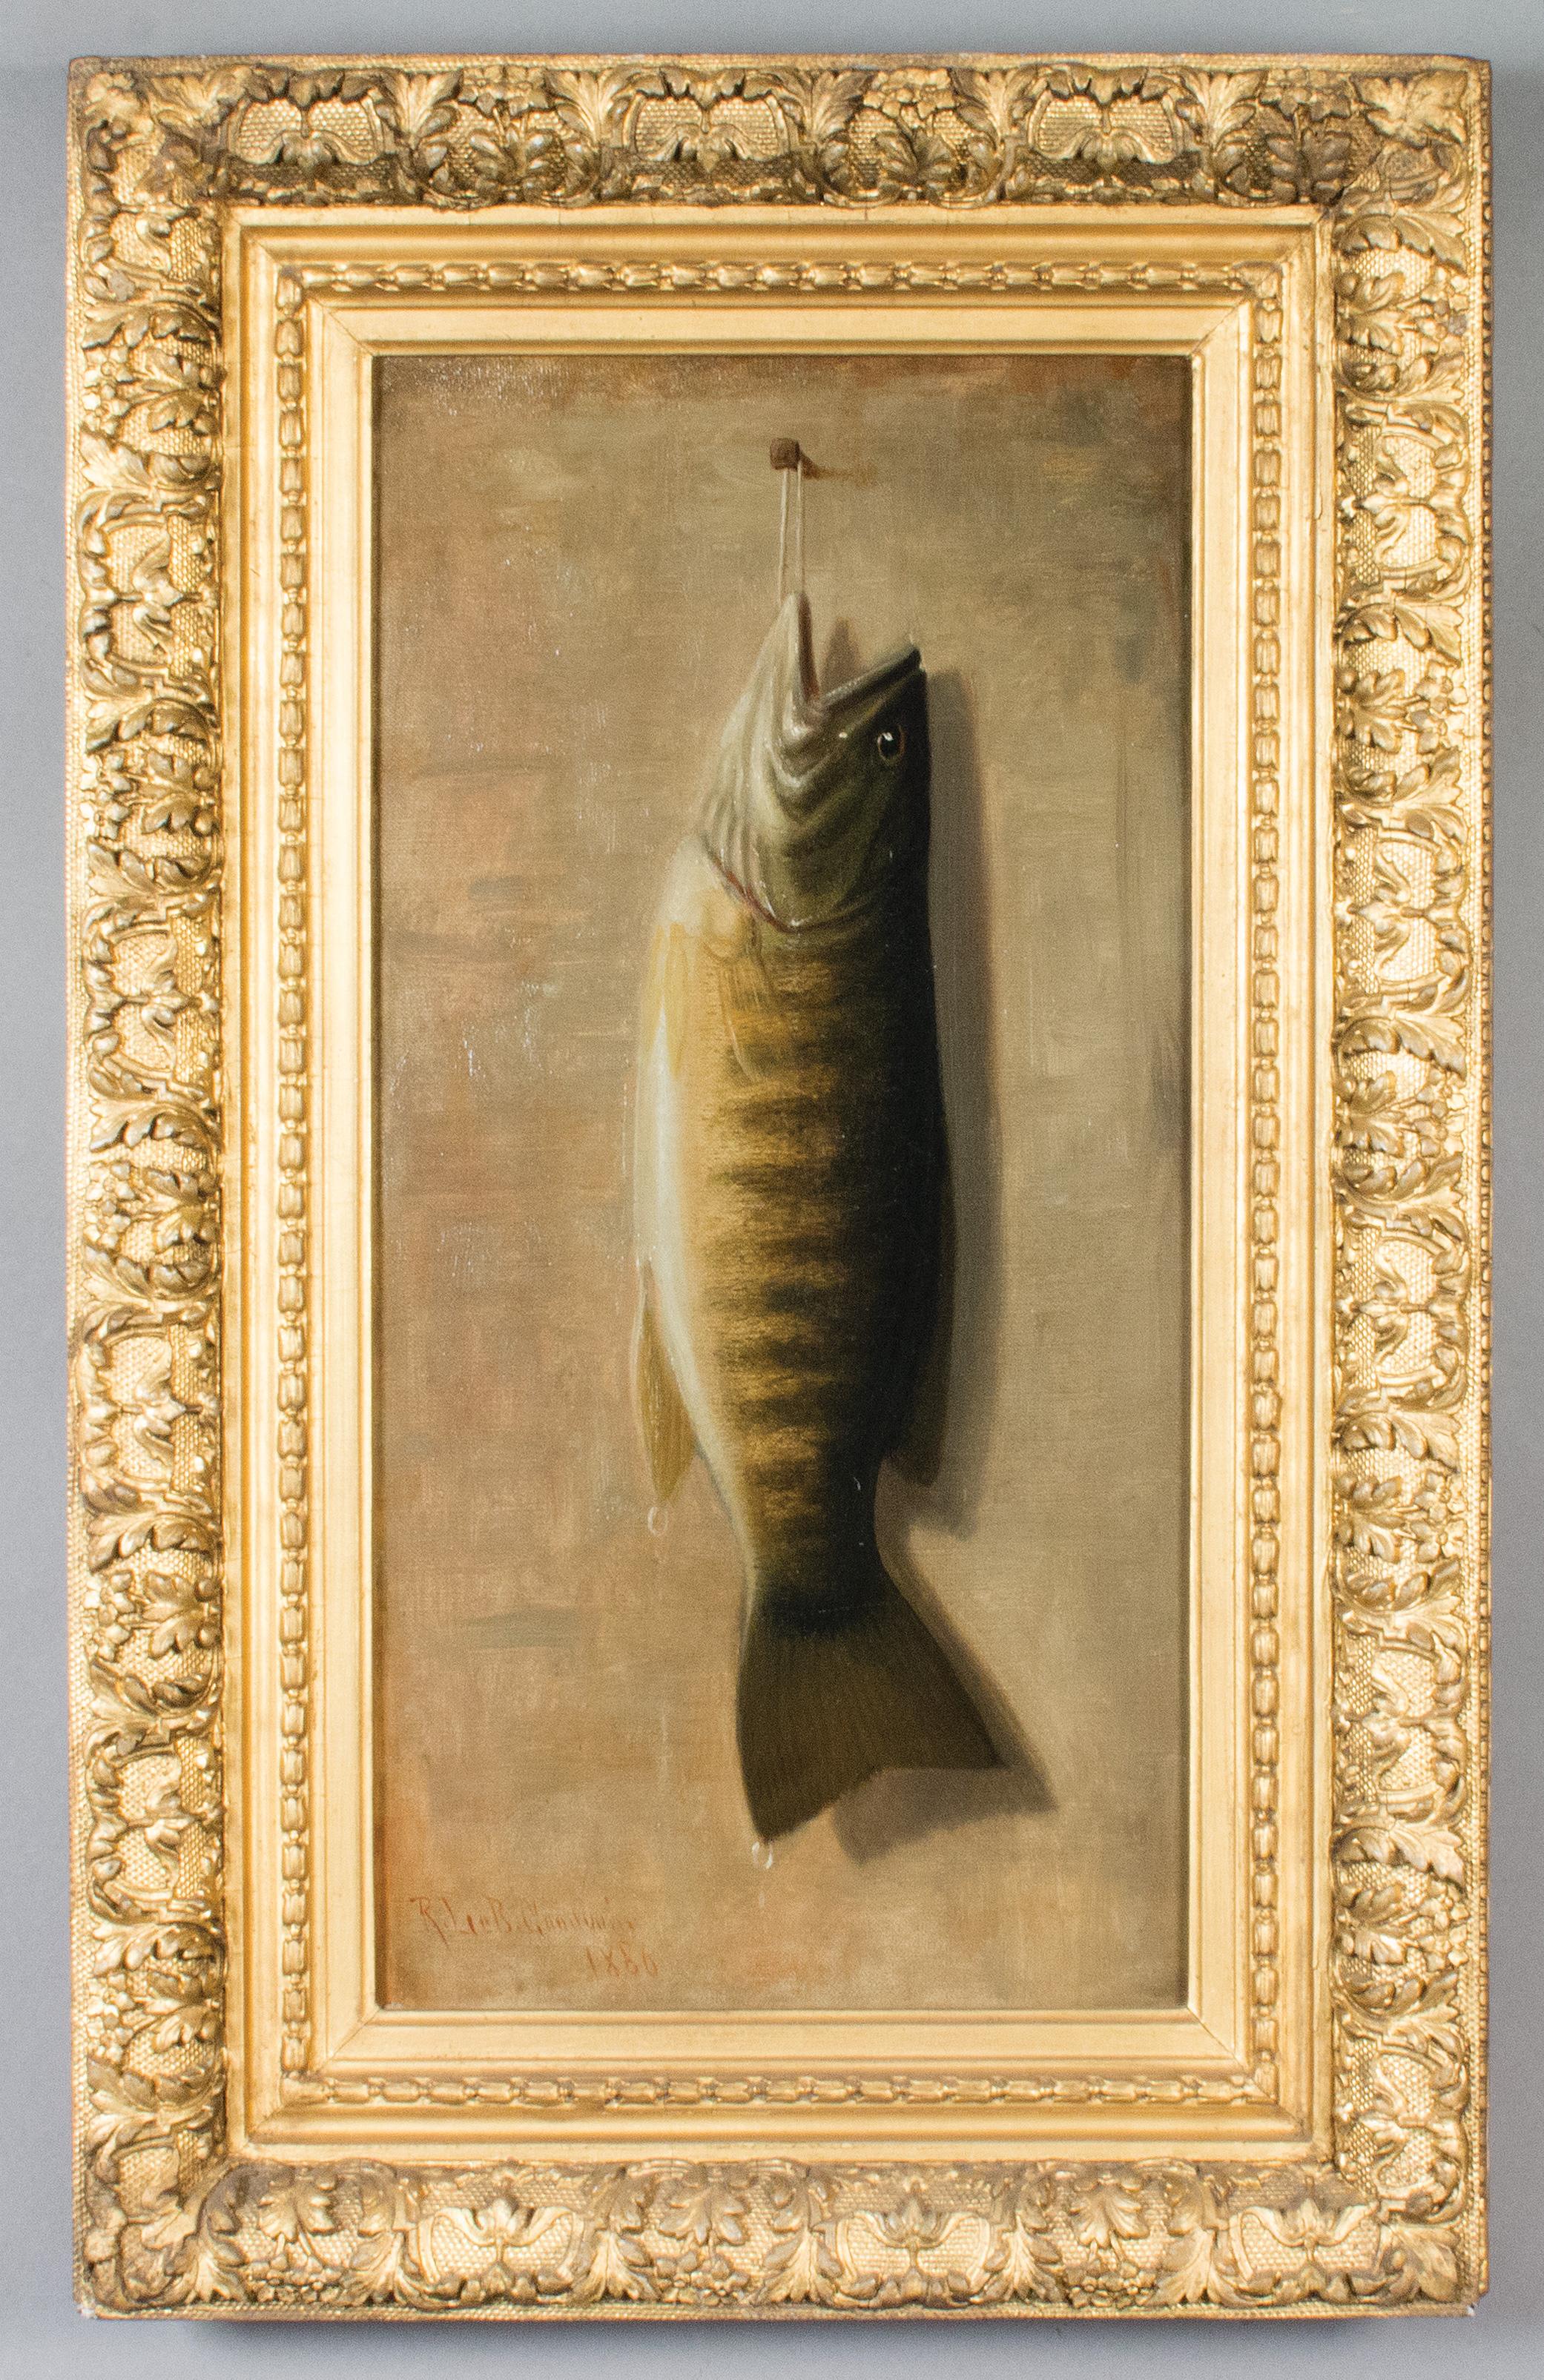 Trophäenfisch von Upstate New York Künstler Richard Goodwin, 1860